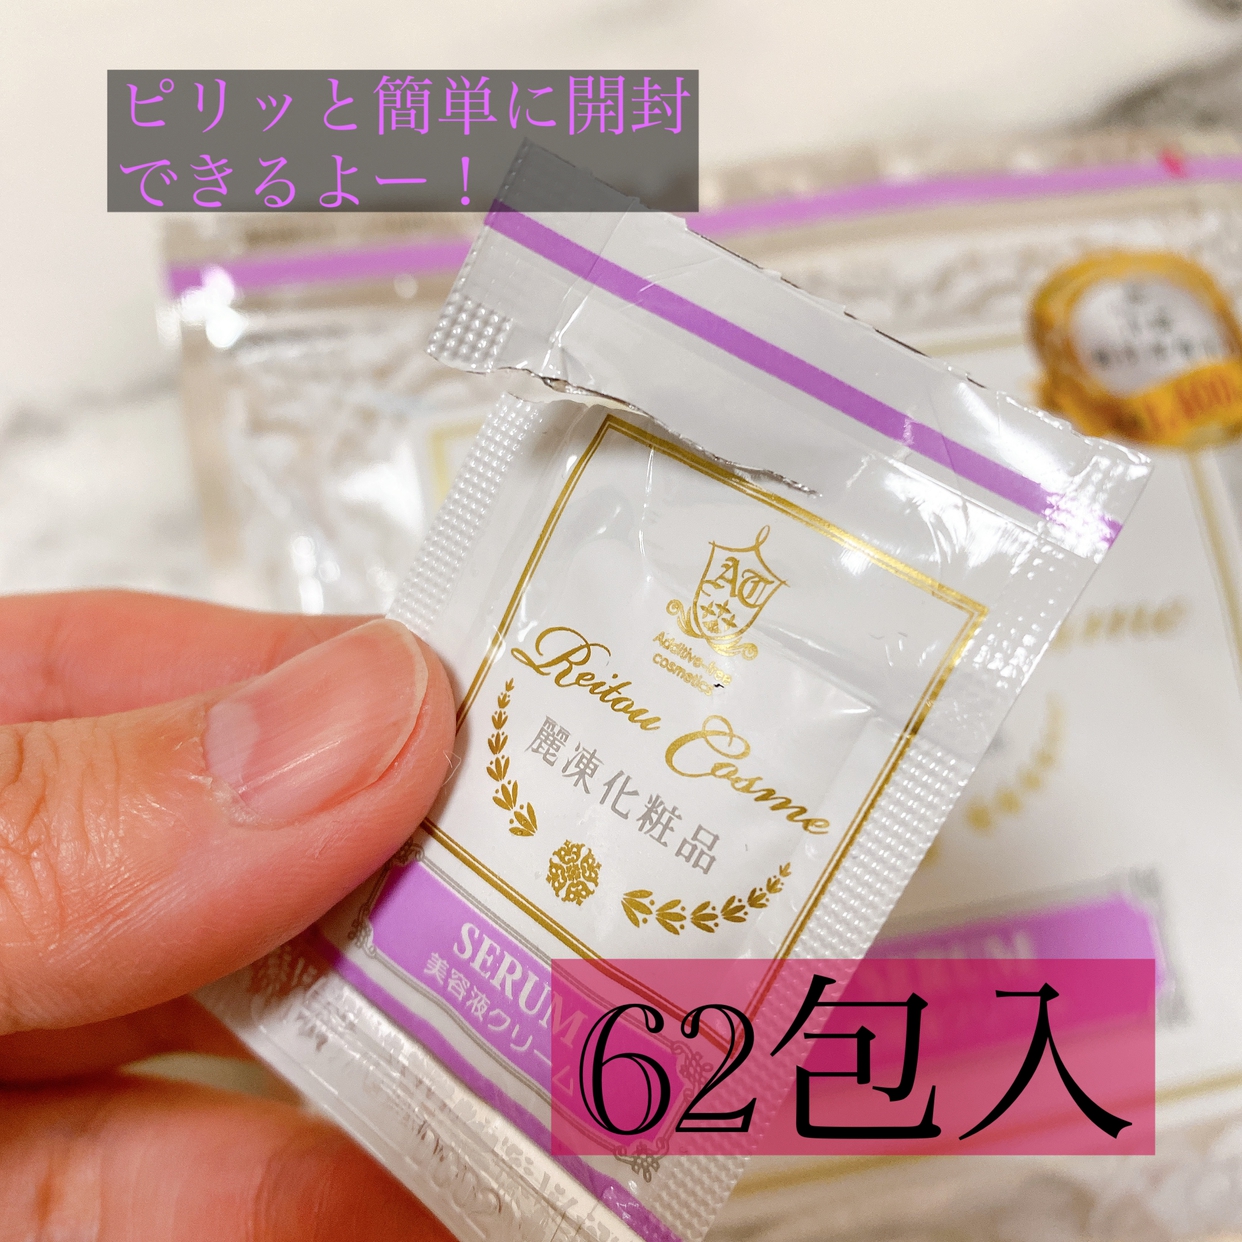 麗凍化粧品(Reitou Cosme) 美容液クリームを使ったちーこすさんのクチコミ画像2